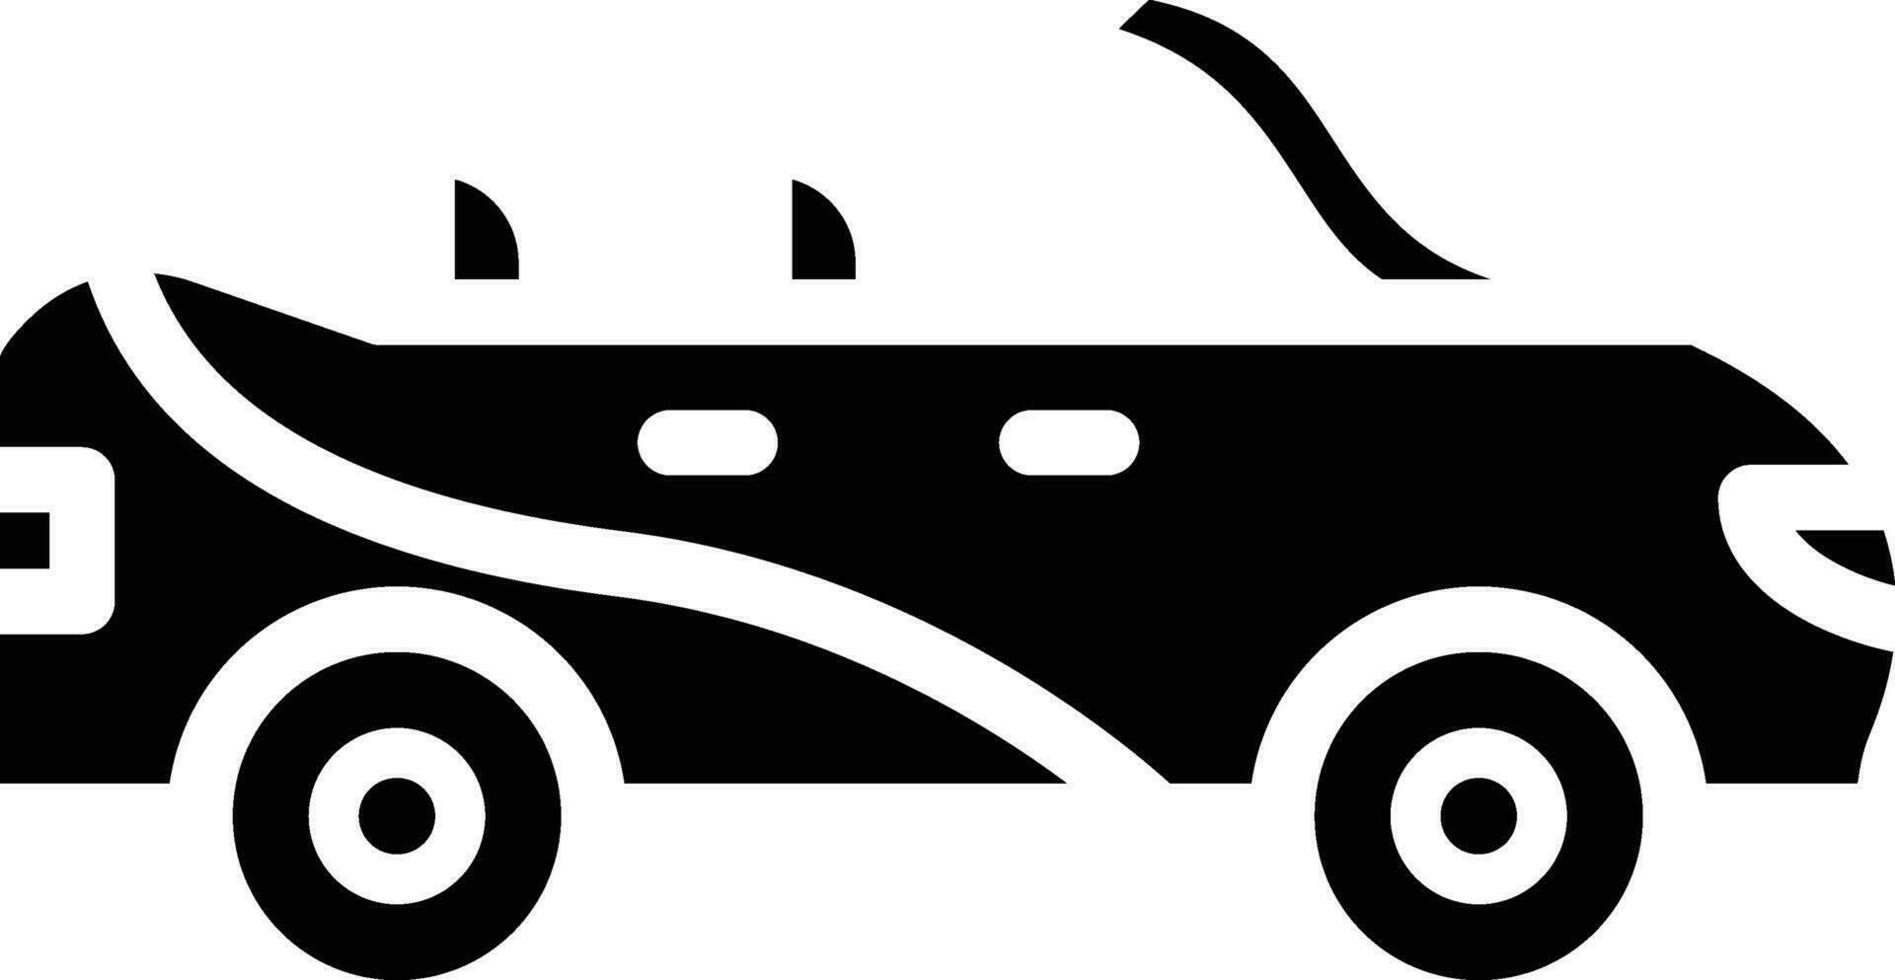 conversível carro vetor ícone